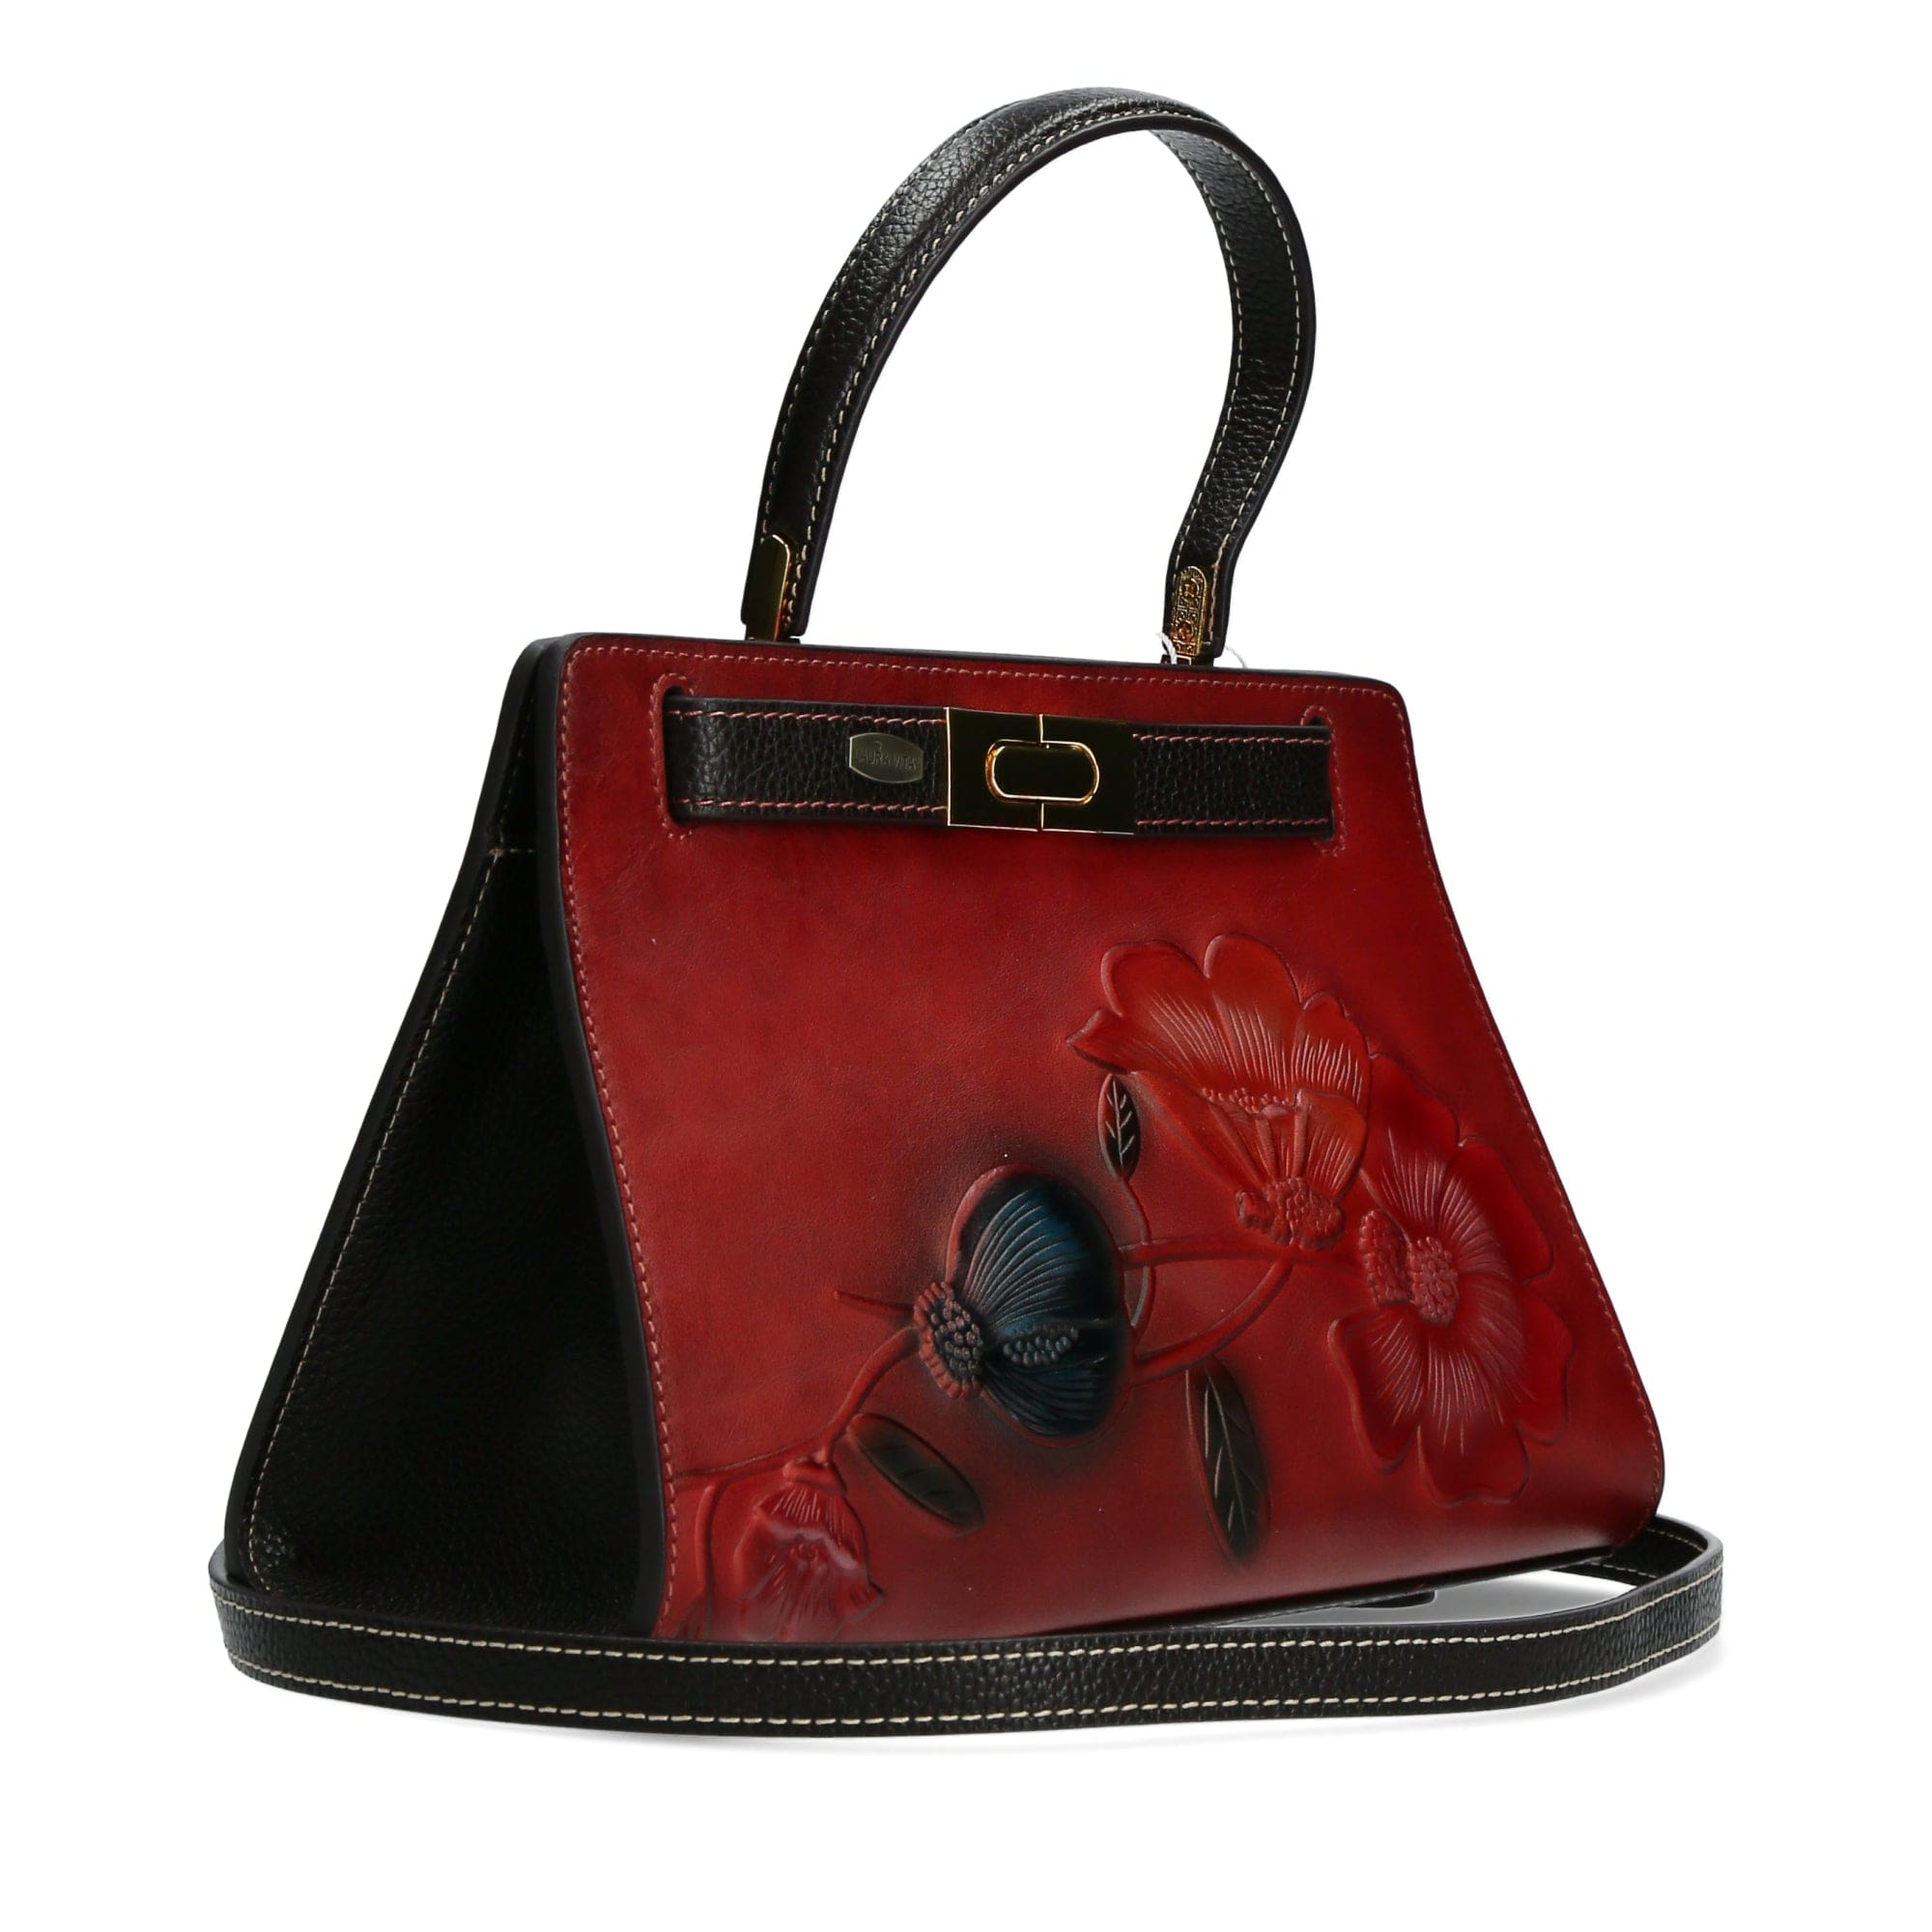 Emiline leather bag - Bag